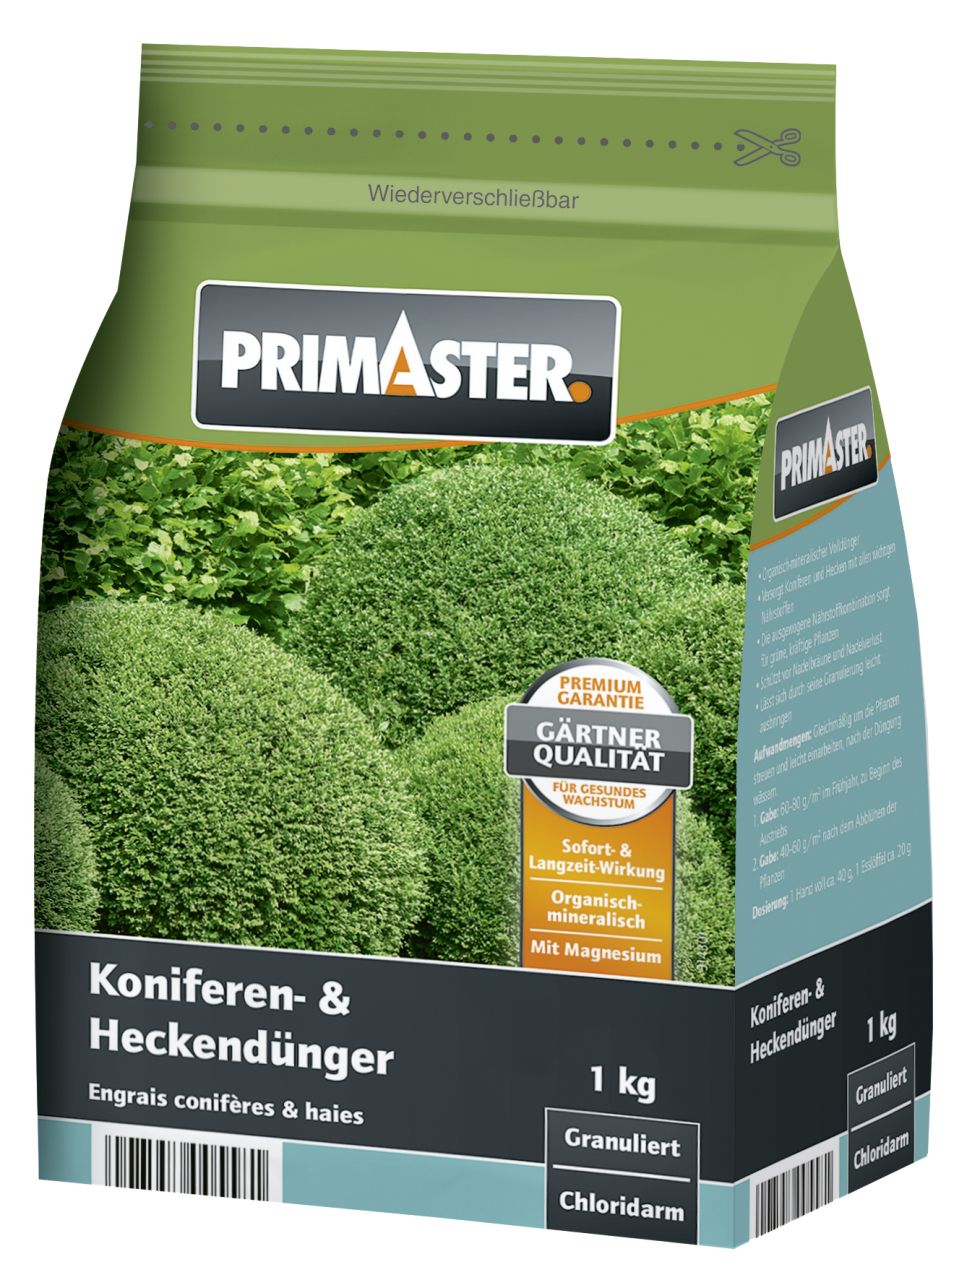 Primaster Gartendünger Hecken und Koniferen 1 kg GLO688301421